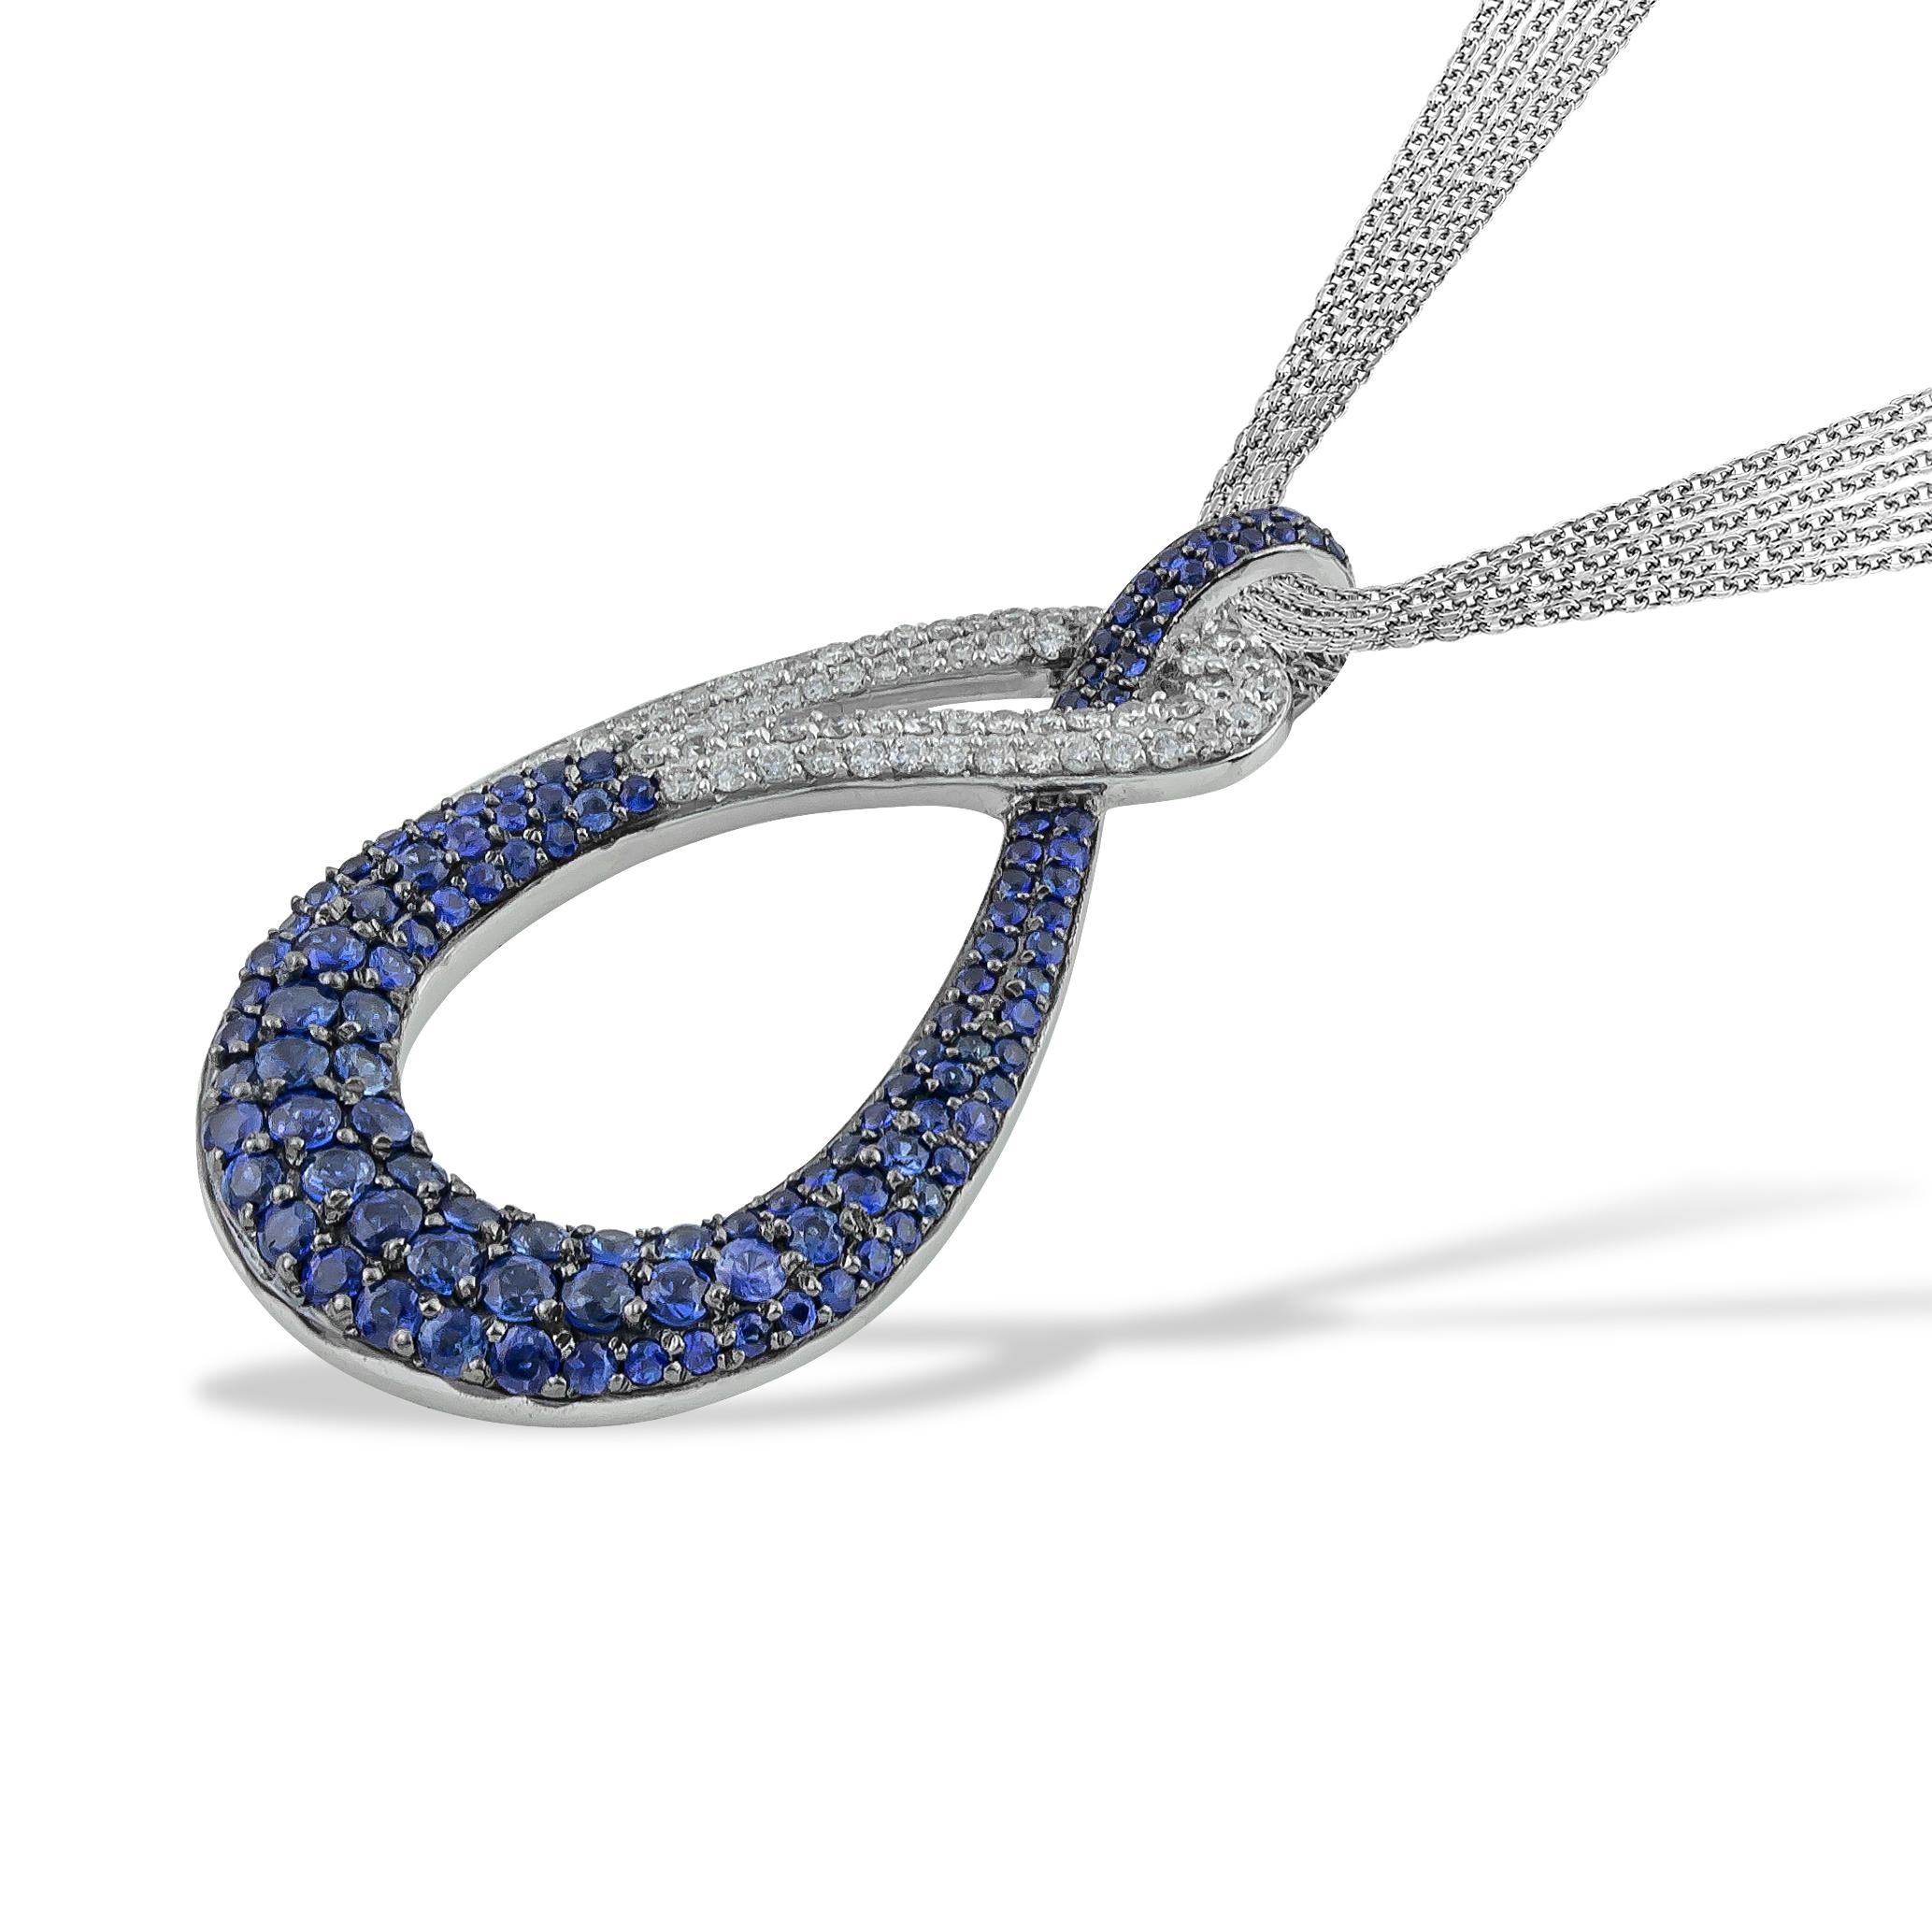 Swan Blue Pave Sapphires and Diamonds Pendant Necklace in 18kt White Gold. Dieser blaue Saphir organische Form Halskette kommt mit Multi Chain ( x4 Diamantschliff rolo Kette) . Diese Halskette gehört zur Collection 